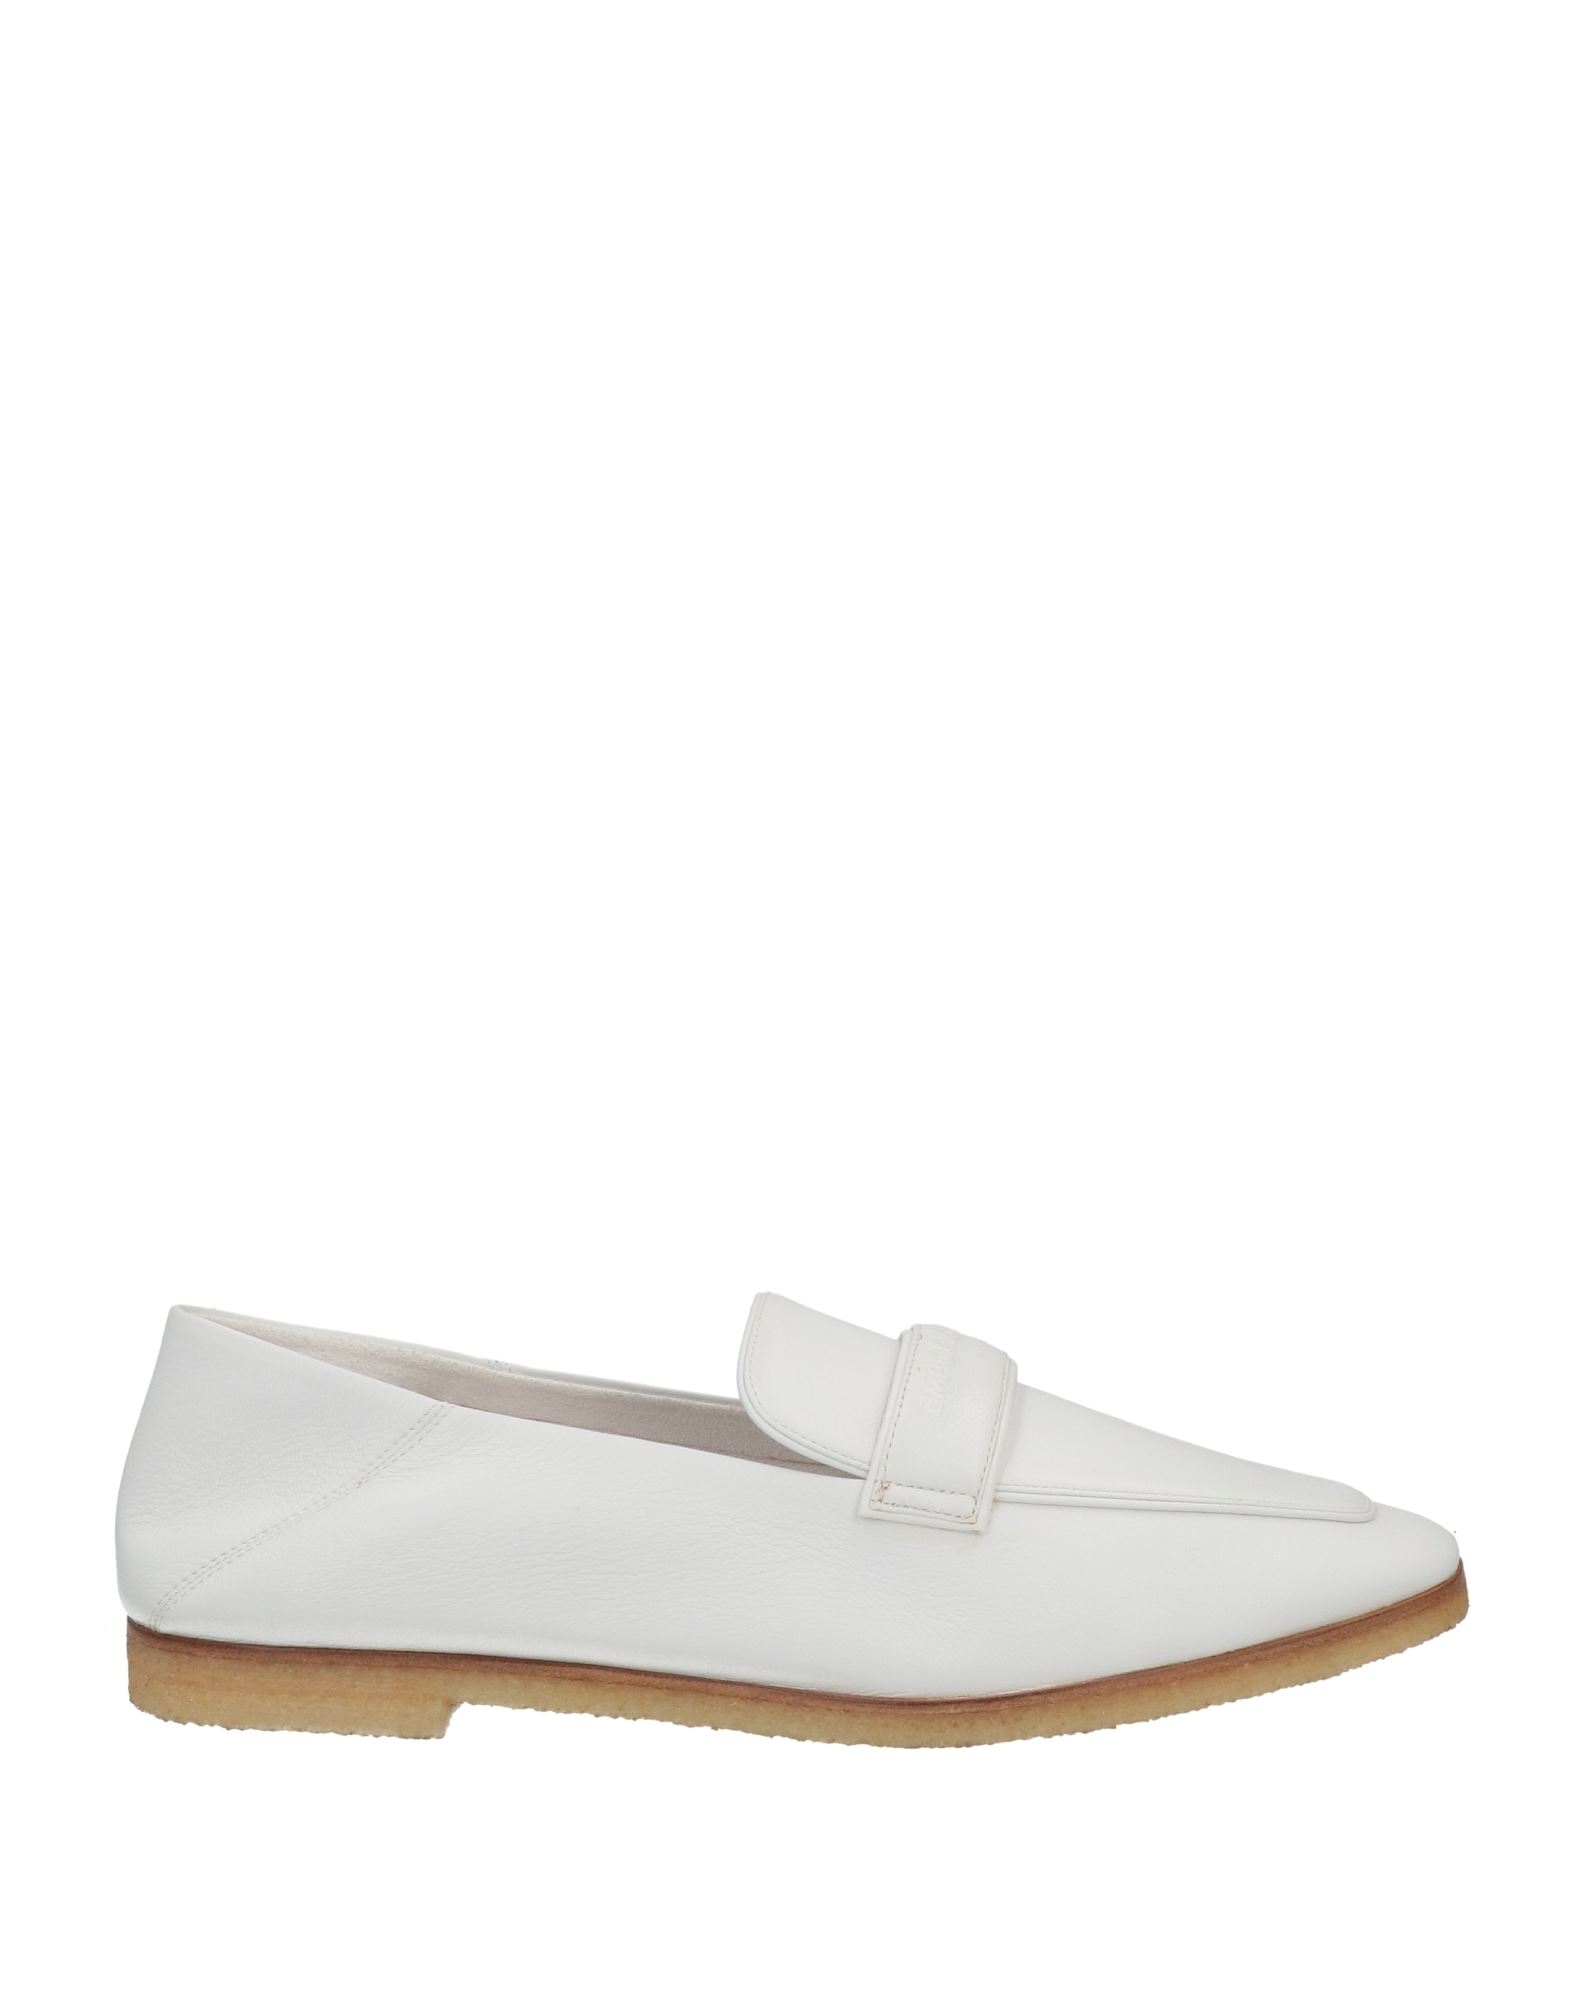 Emporio Armani Loafers In White